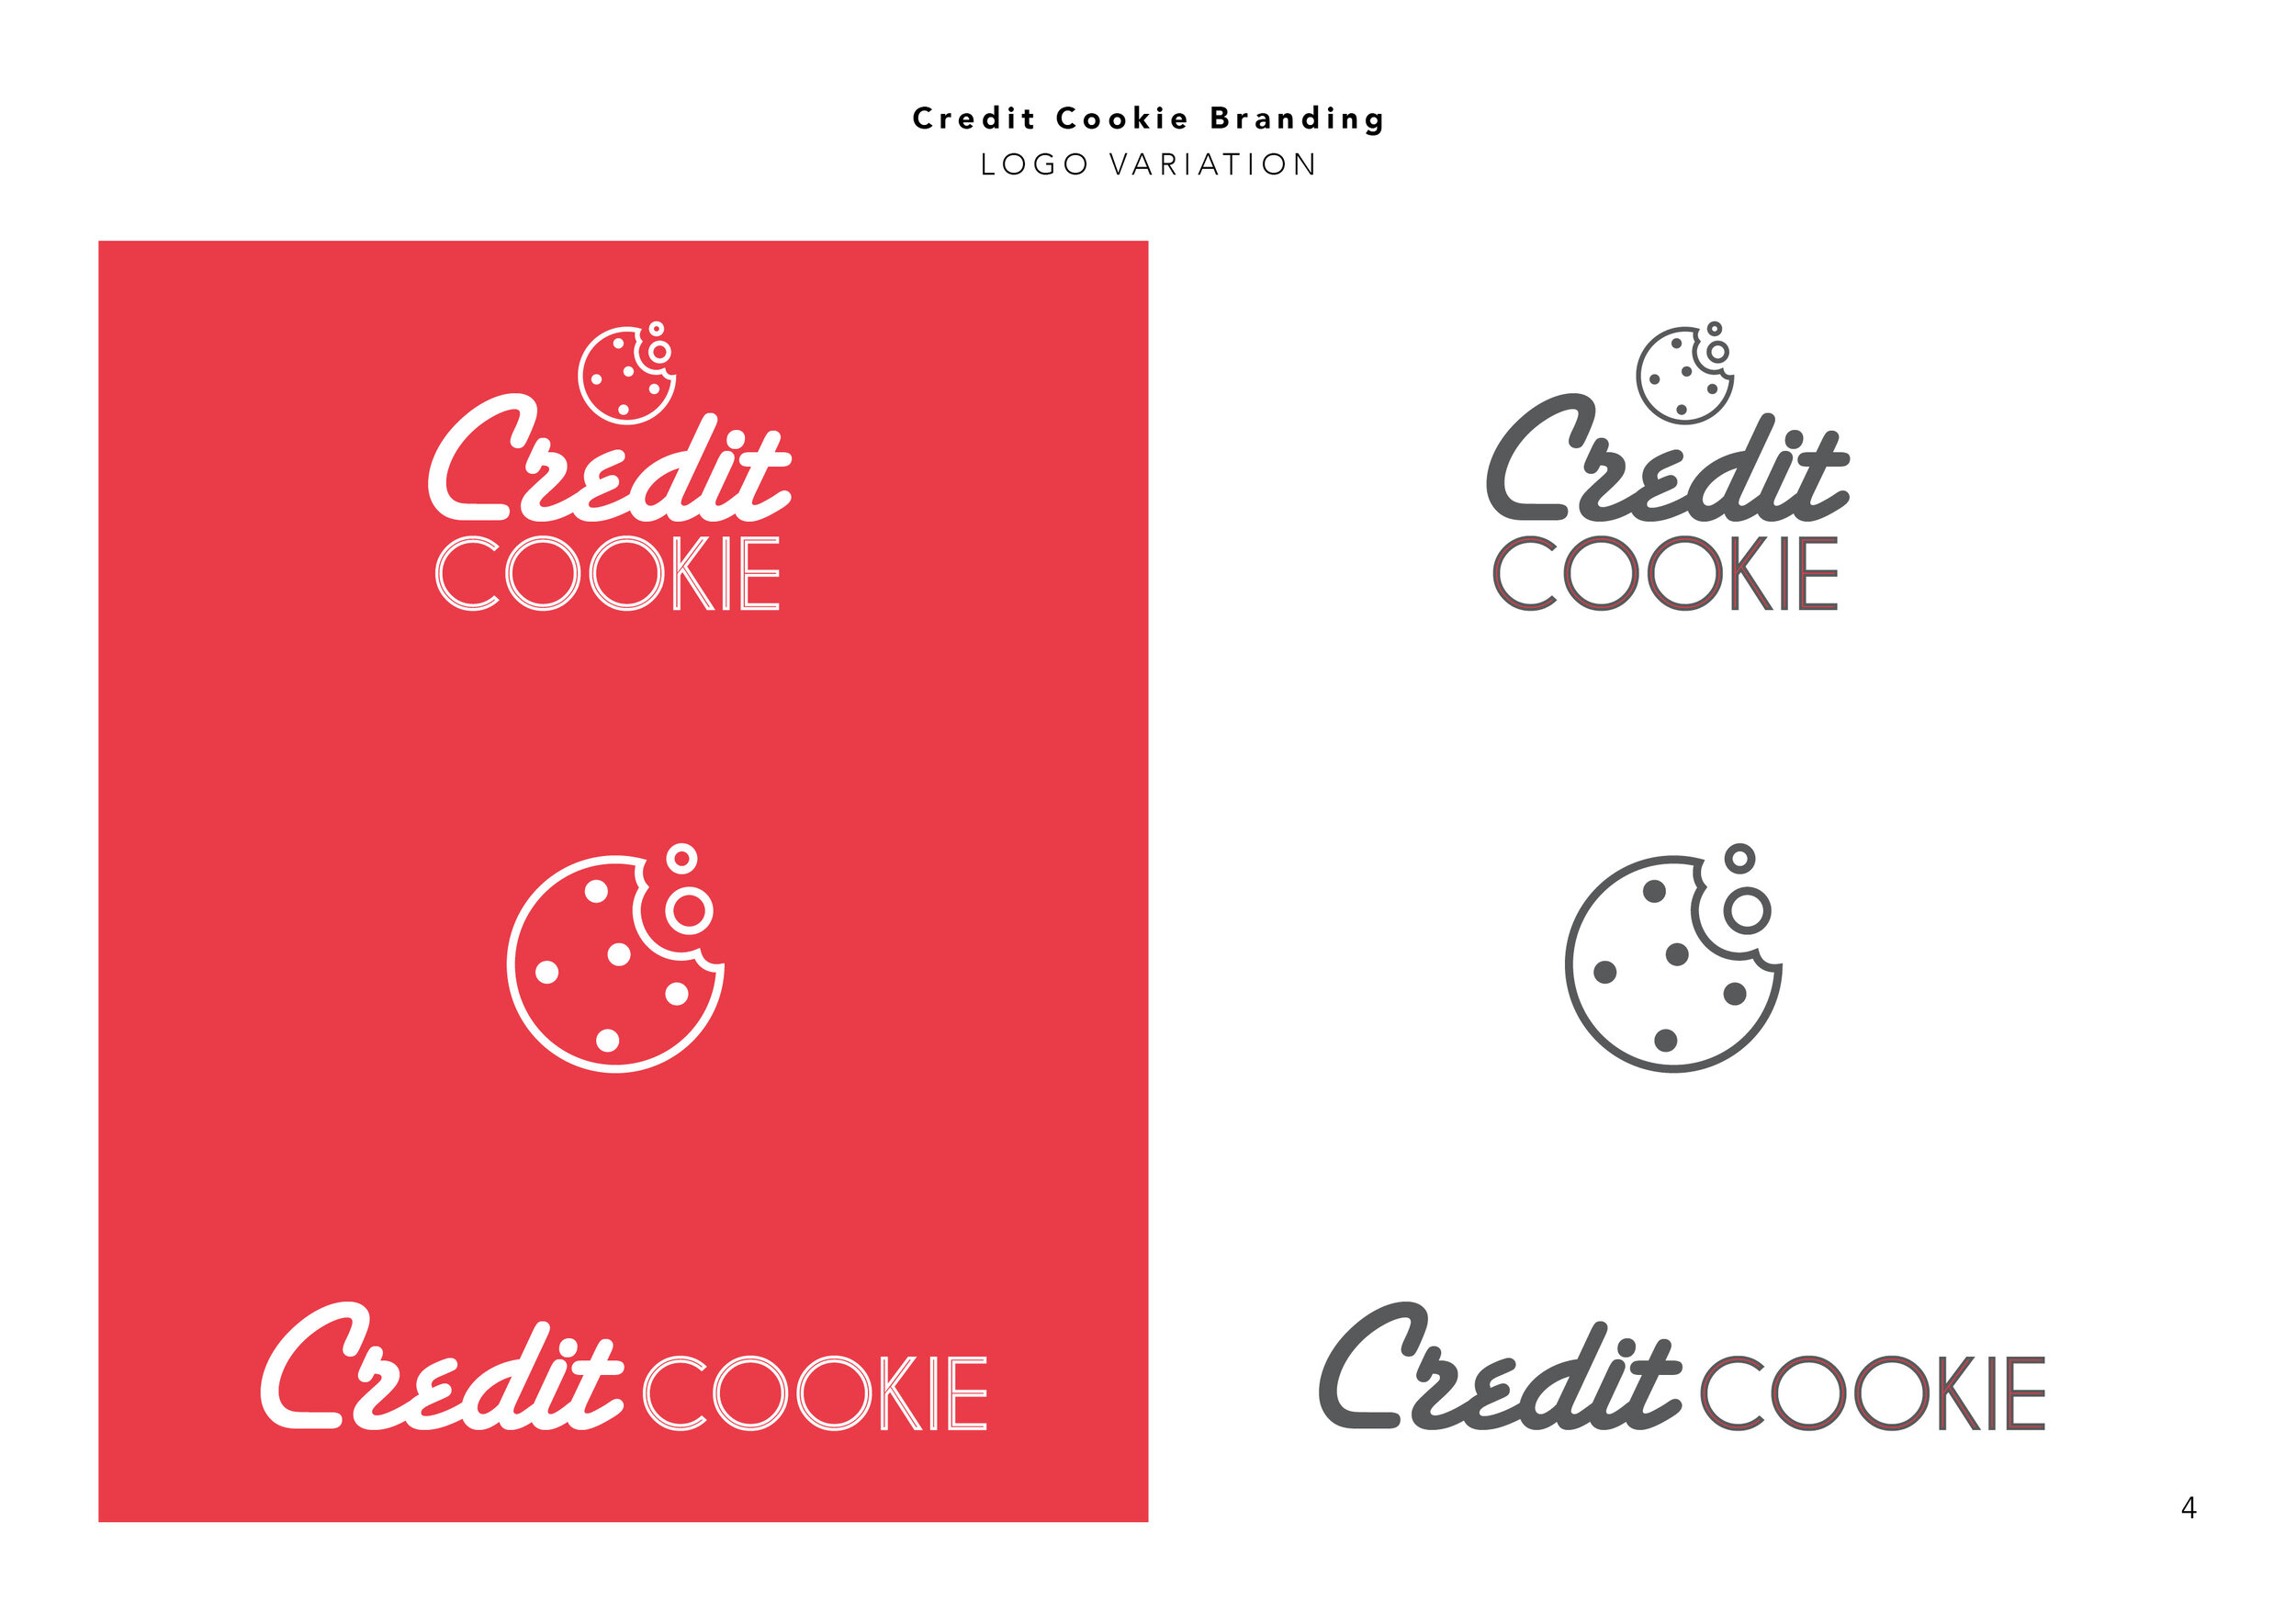 Credit Cookie Branding Guide5.jpg